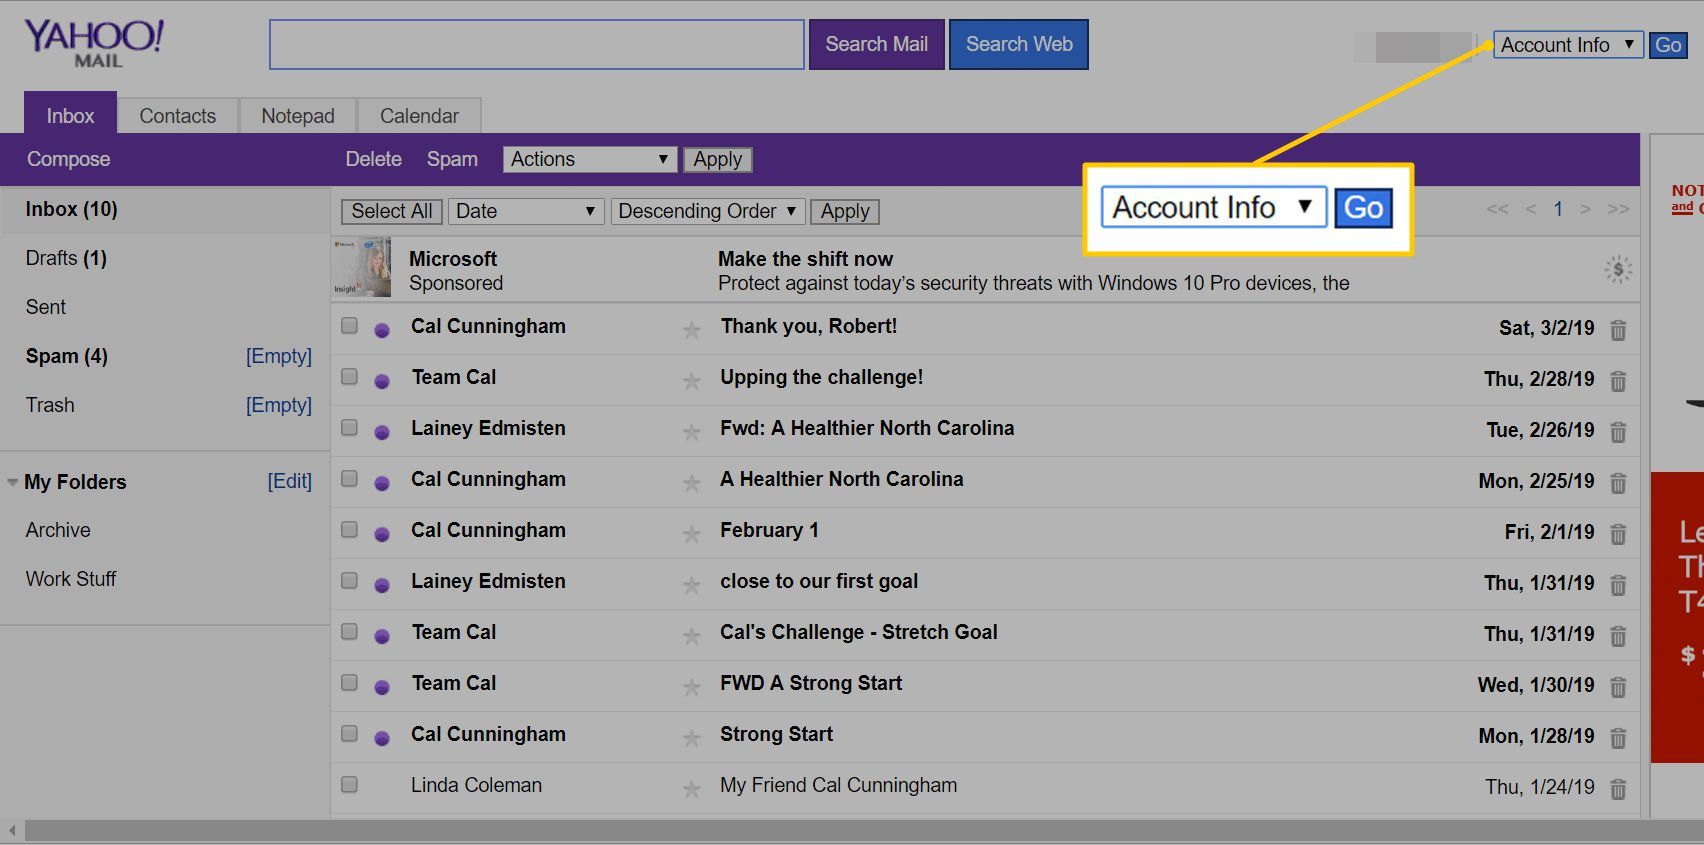 Раскрывающаяся информация об учетной записи в Yahoo Mail